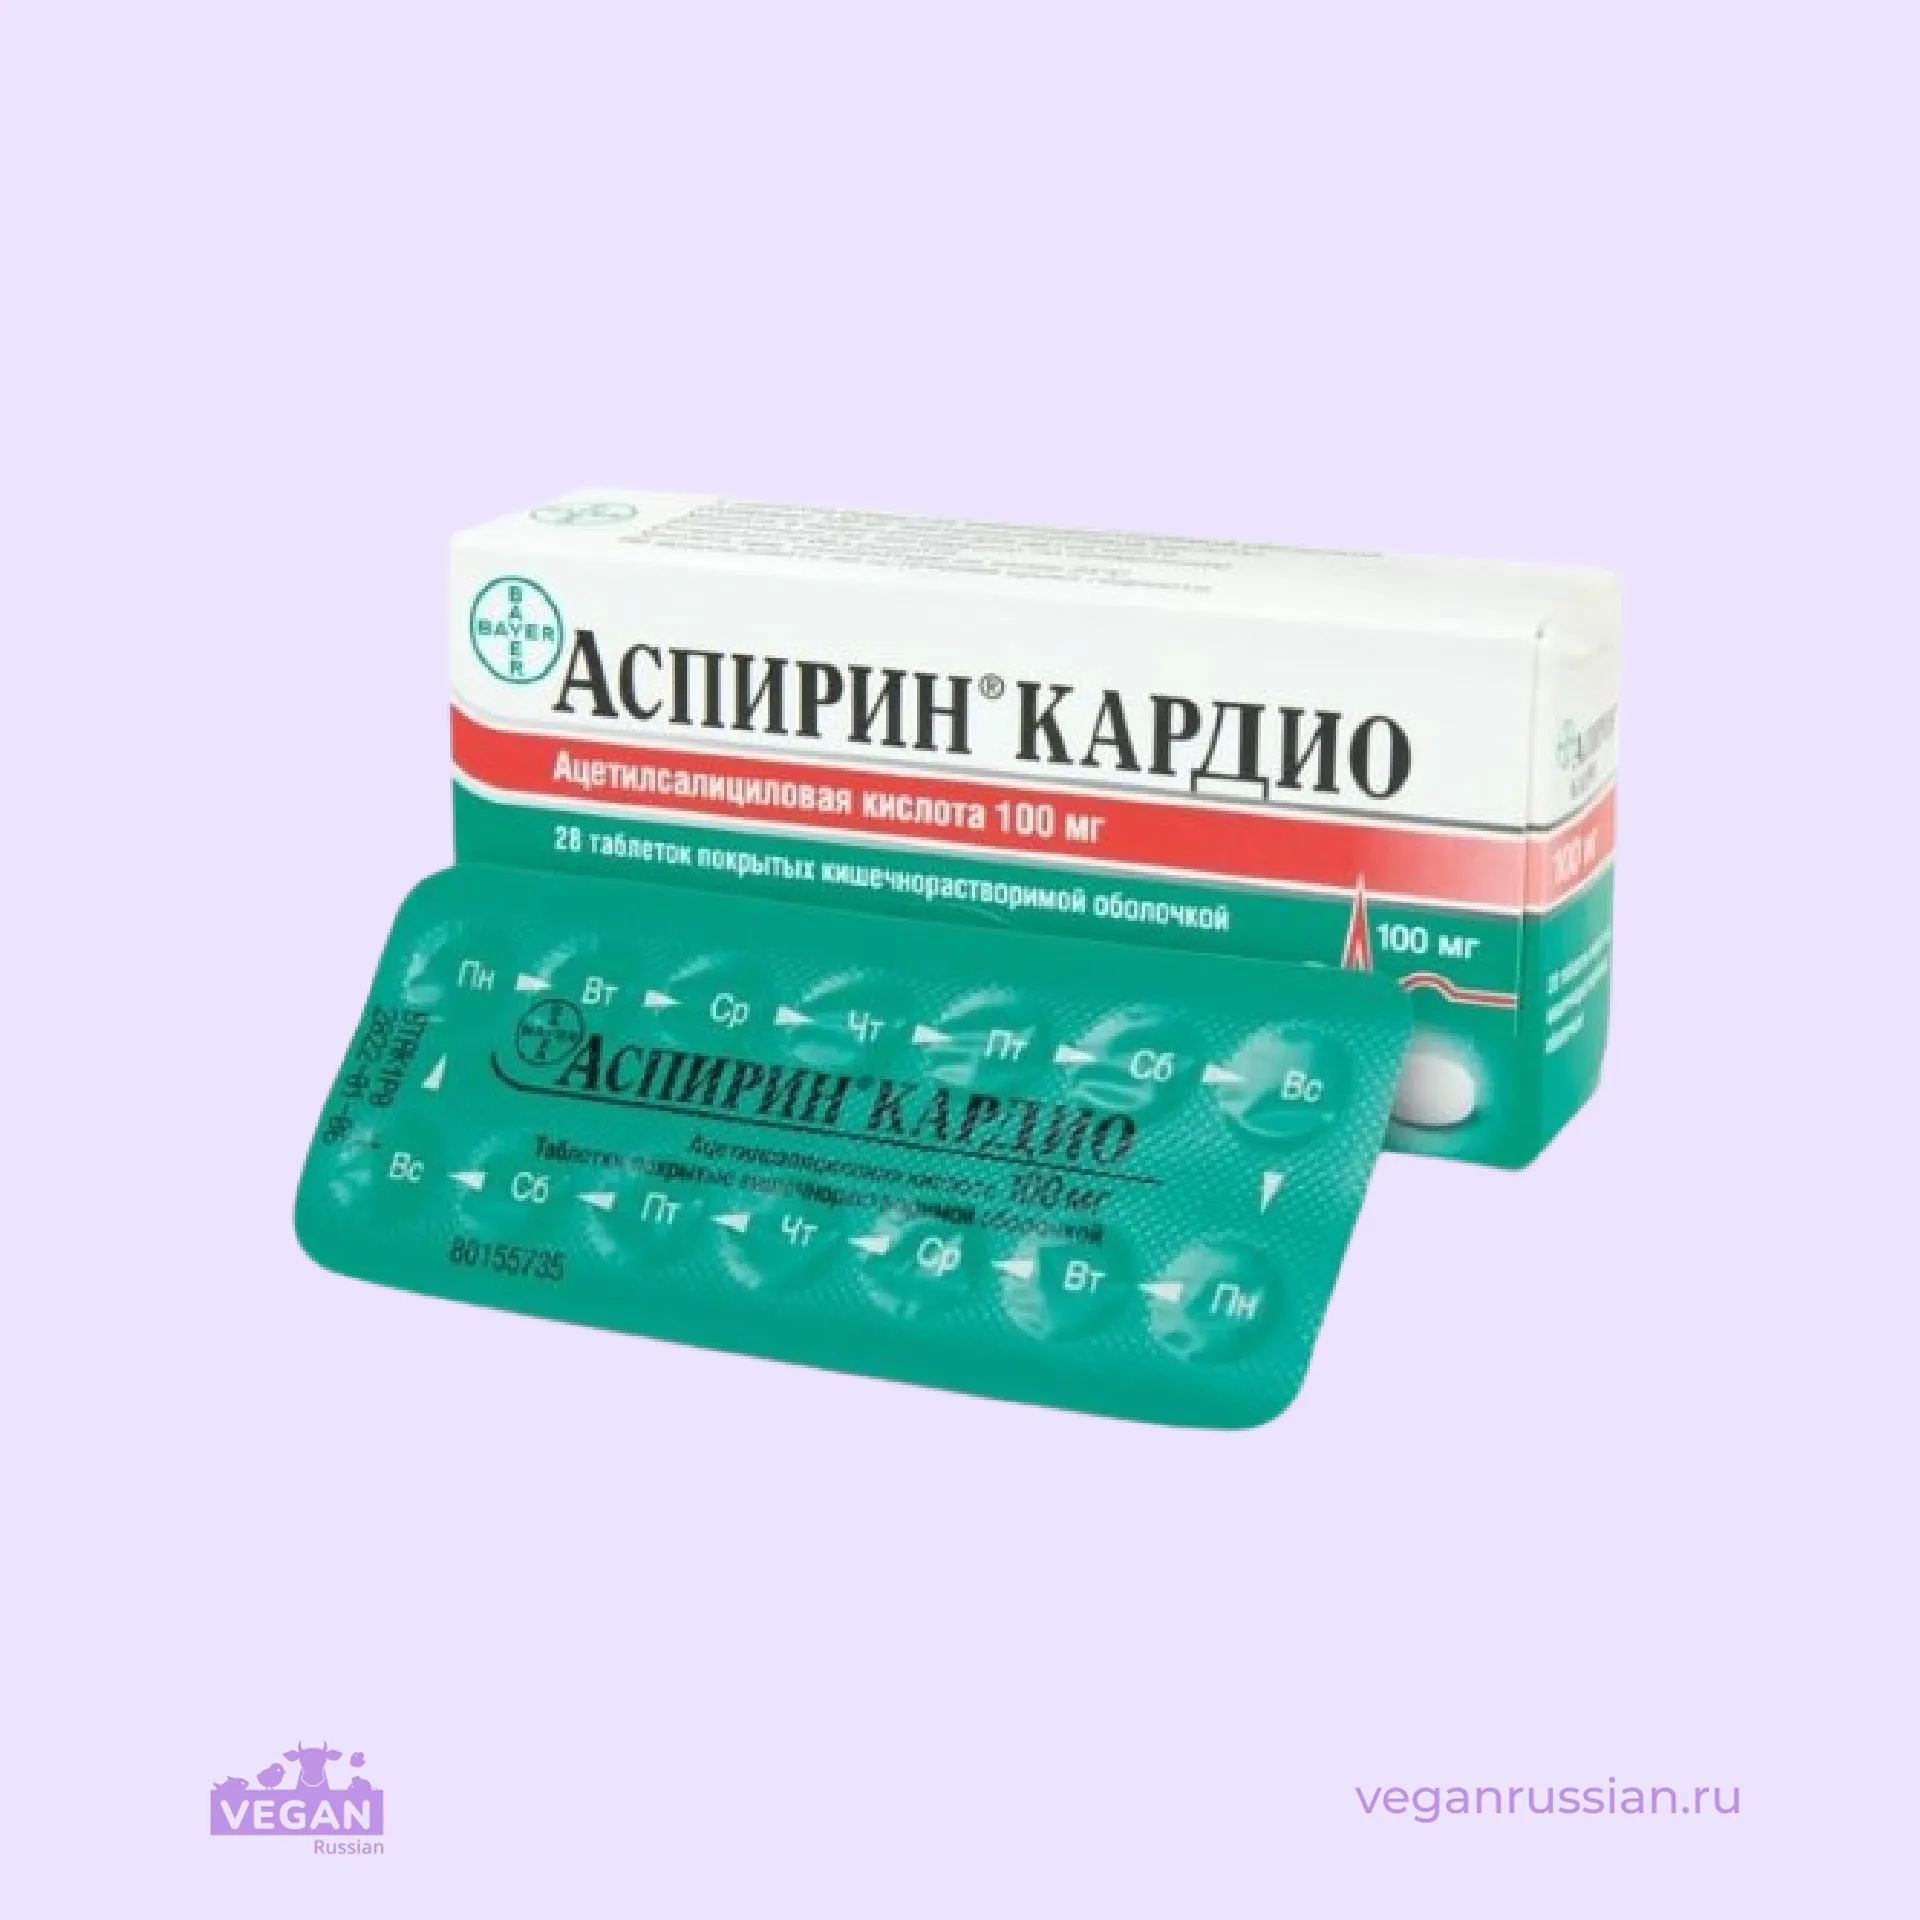 Таблетки Аспирин кардио 100 мг Bayer 28 шт